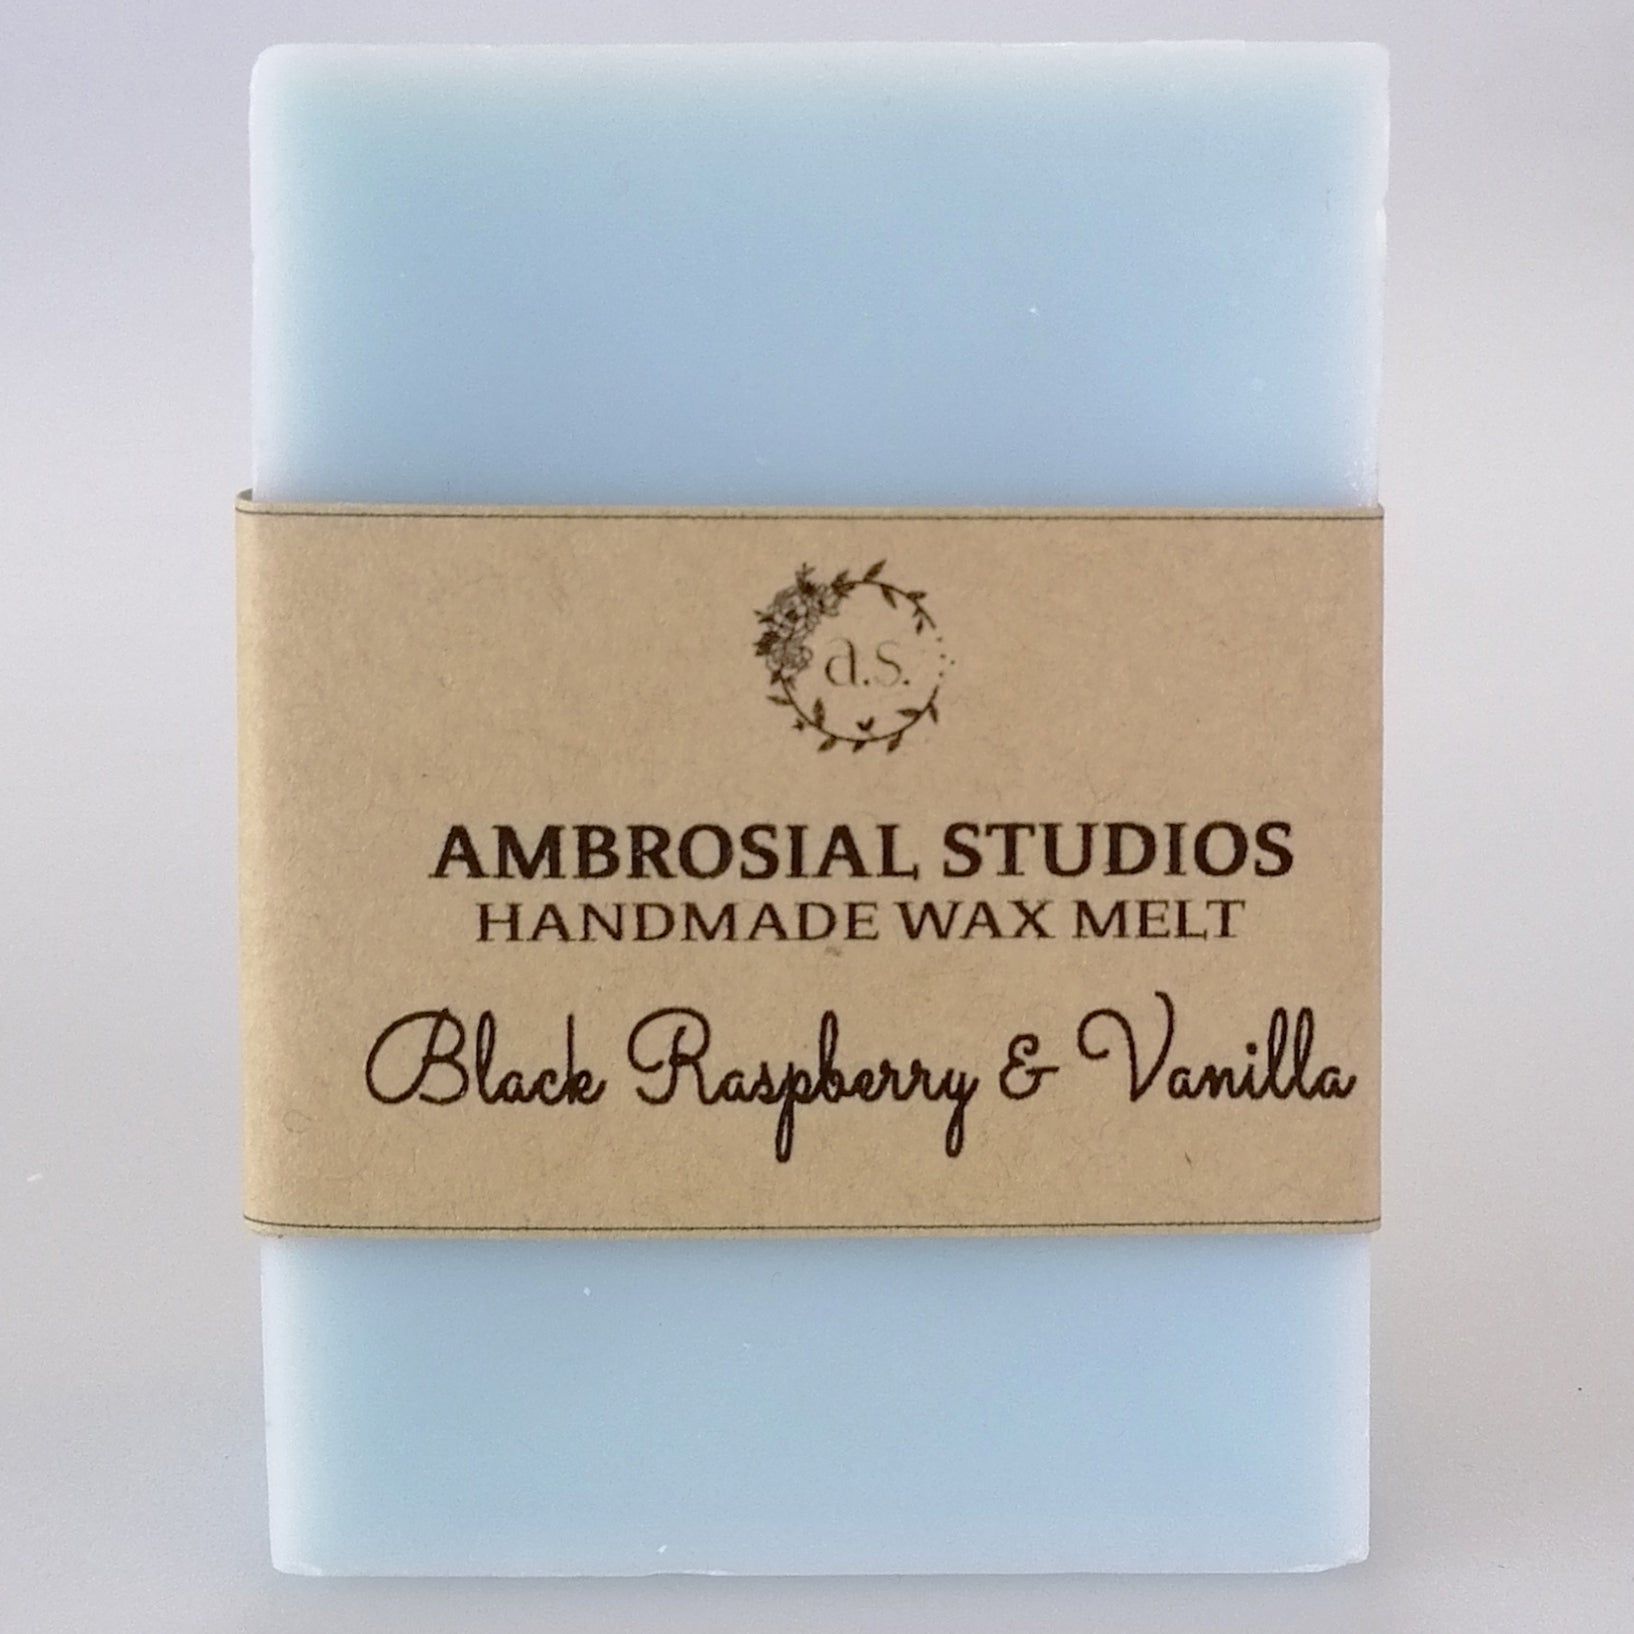 Ambrosial Studios - Handmade Wax Melt - Black Raspberry & Vanilla